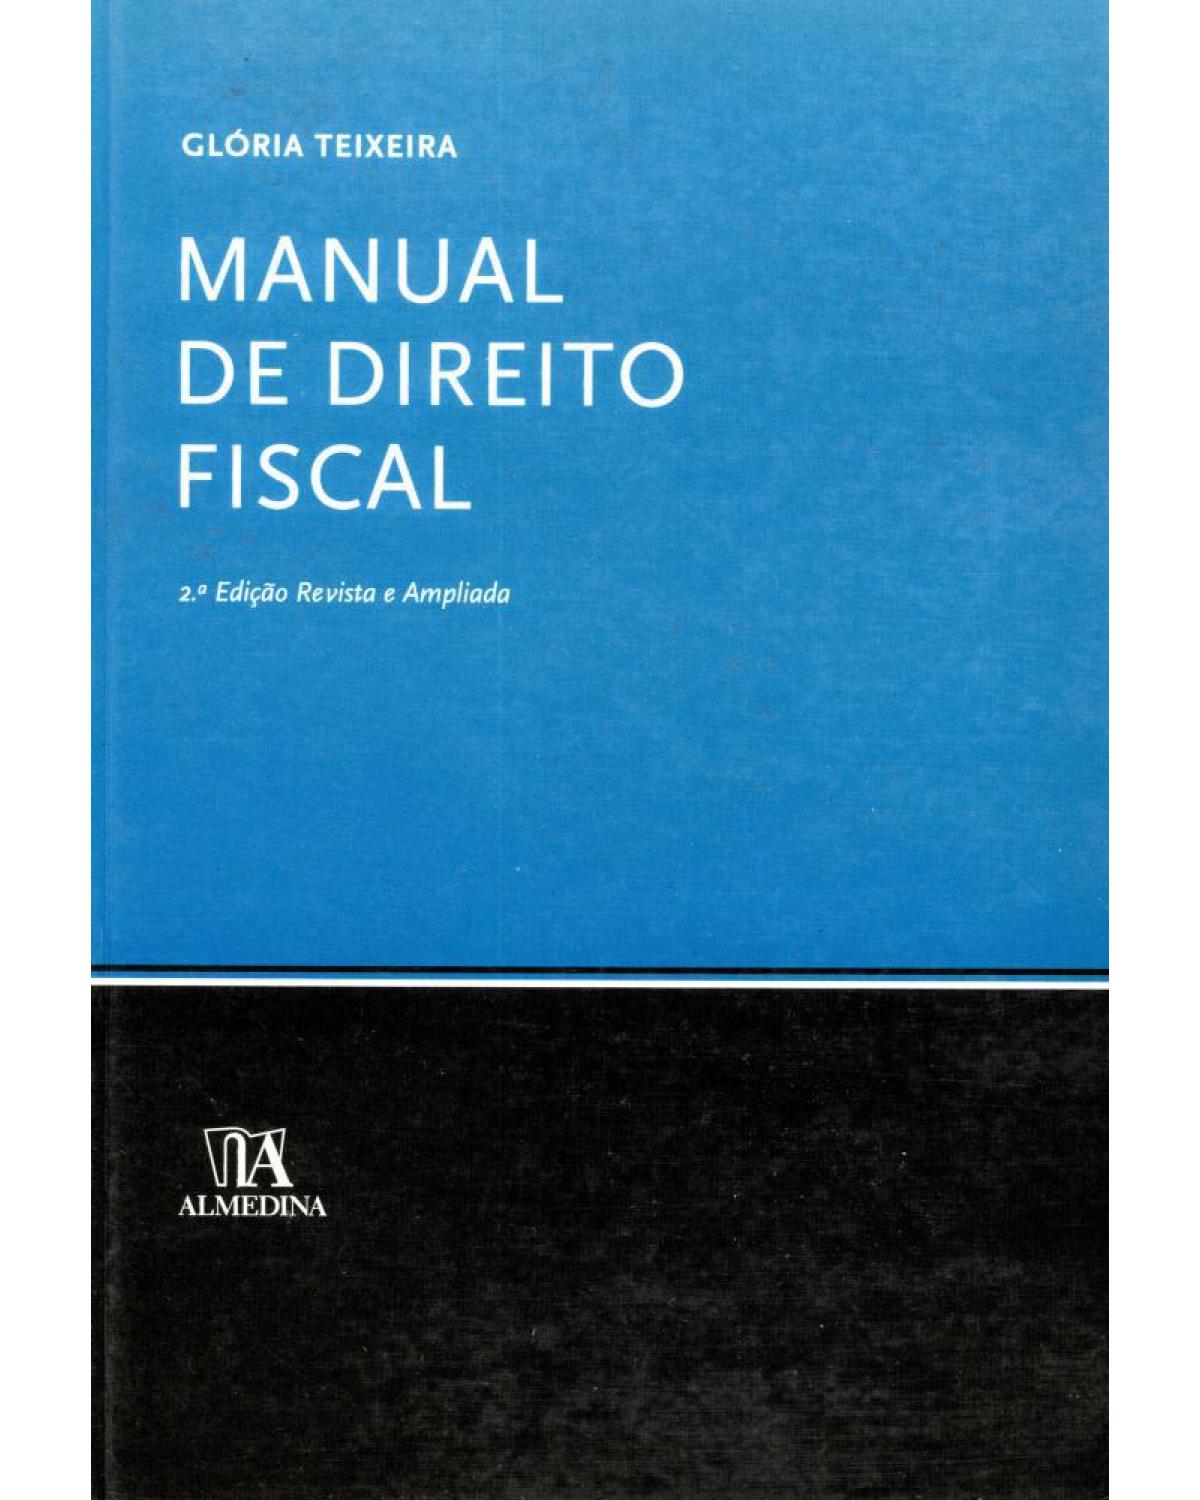 Manual de direito fiscal - 2ª Edição | 2012